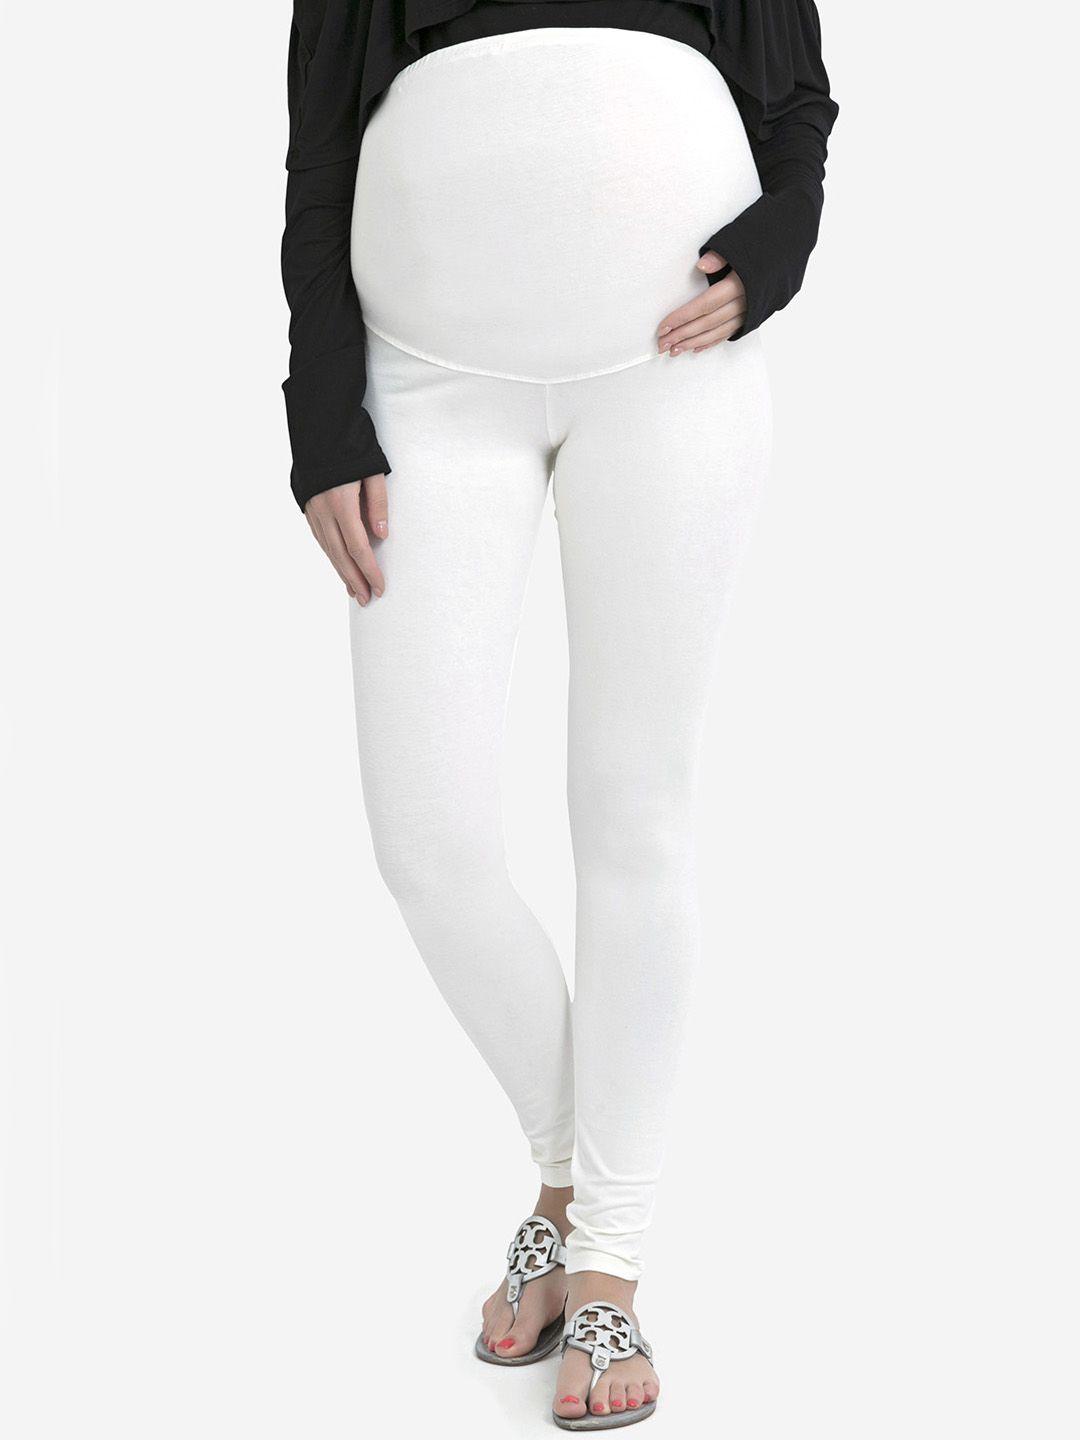 blush-9-maternity-women-off-white-solid-ankle-length-maternity-leggings